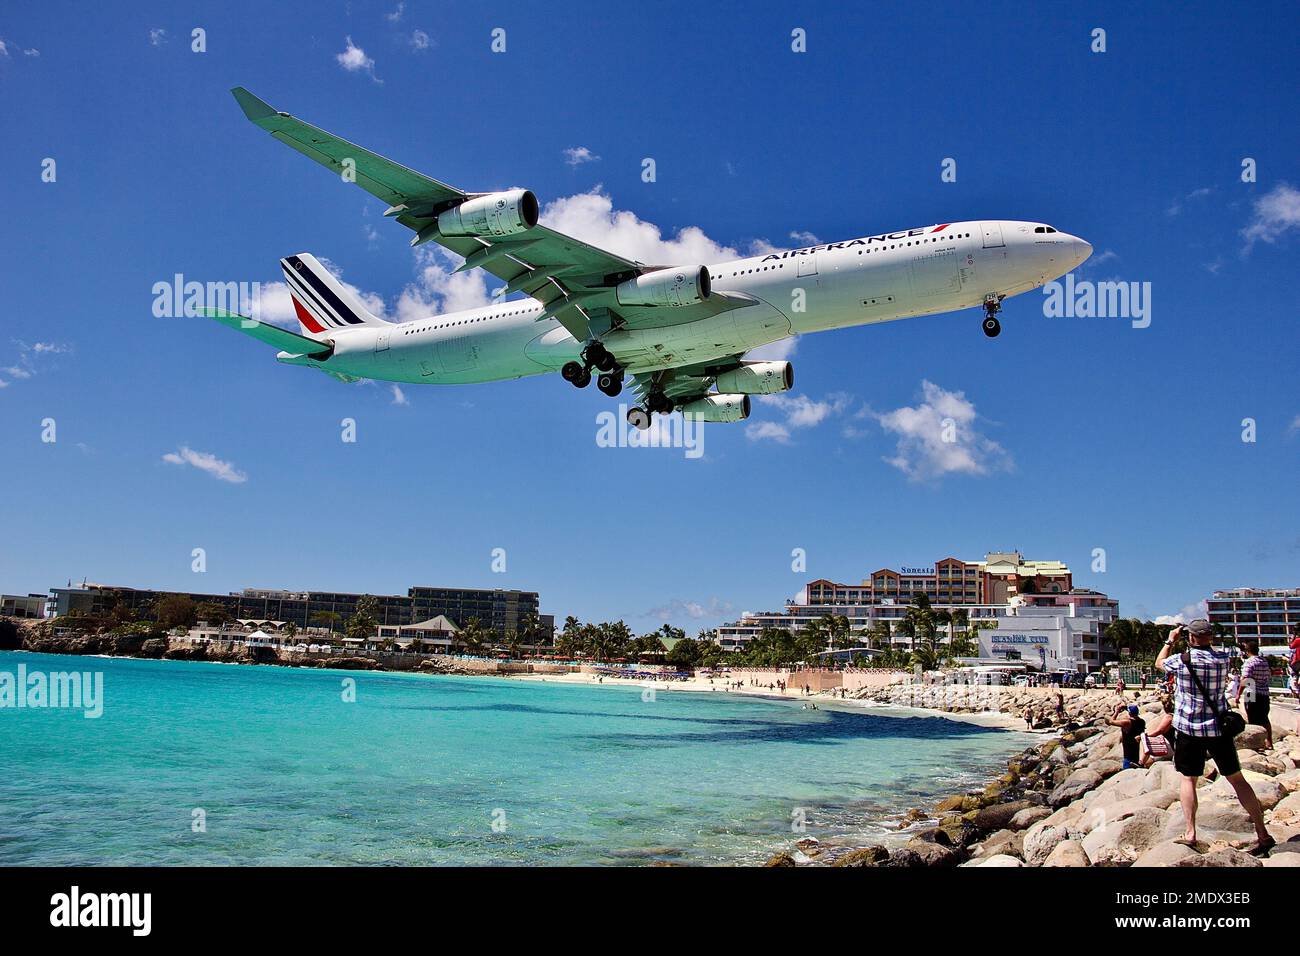 Airliners landing St. Maarten airport. Stock Photo